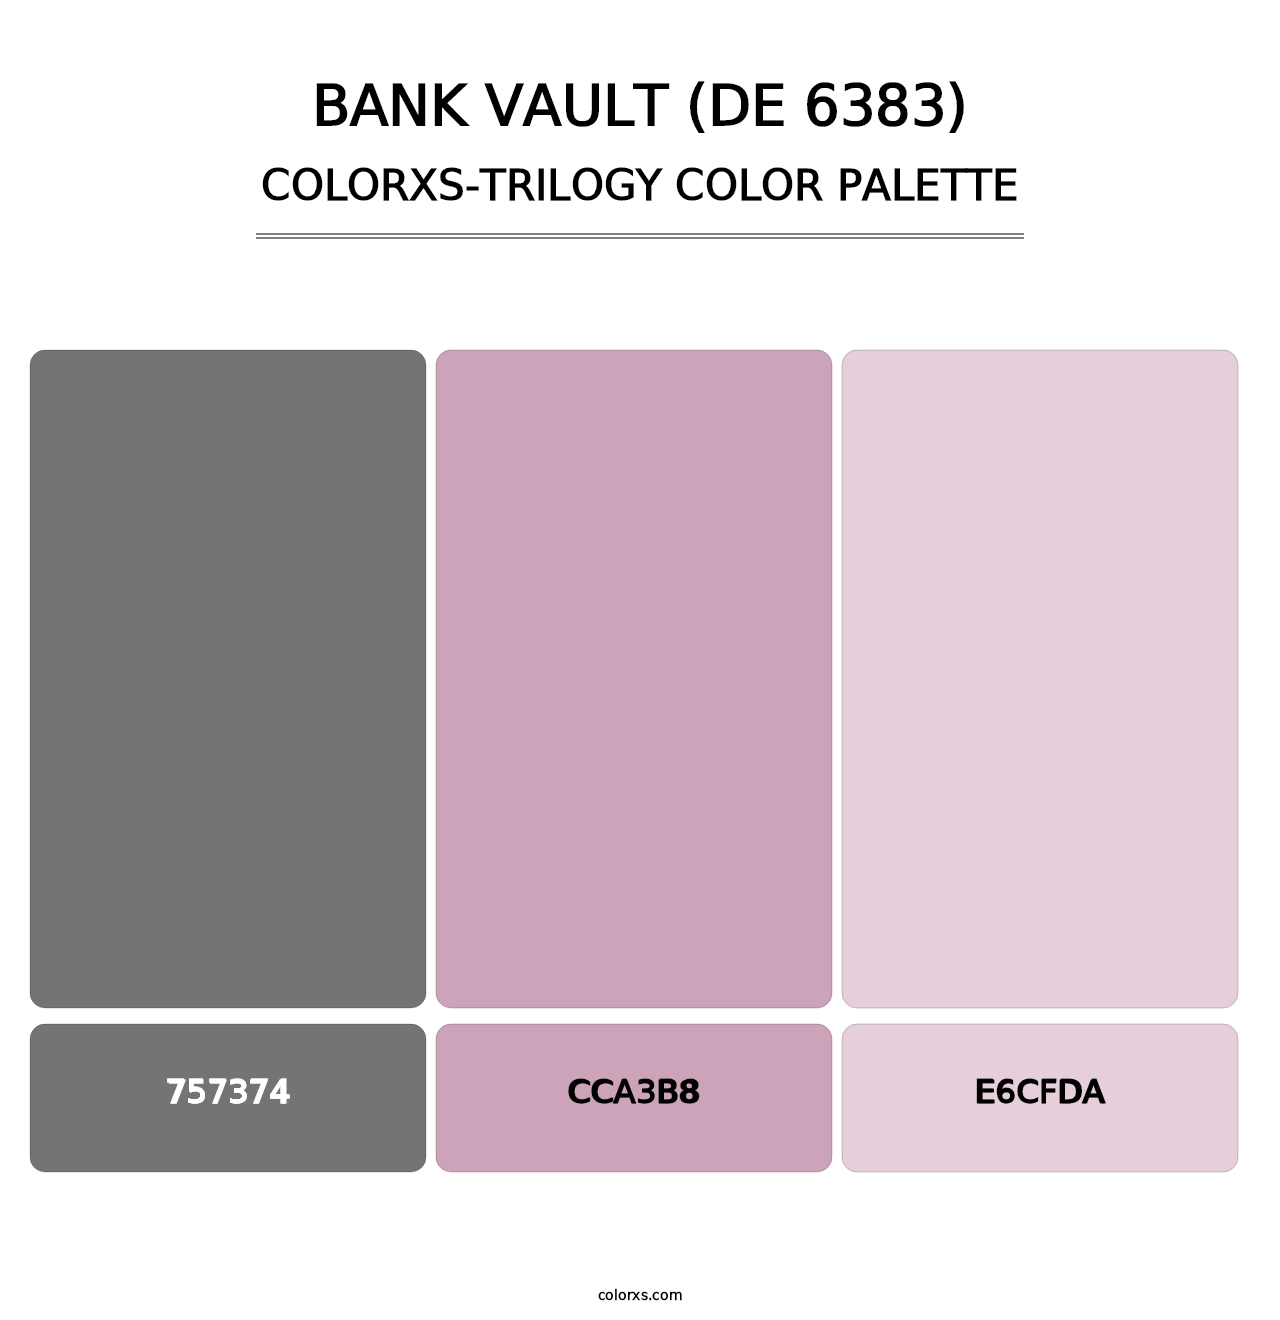 Bank Vault (DE 6383) - Colorxs Trilogy Palette